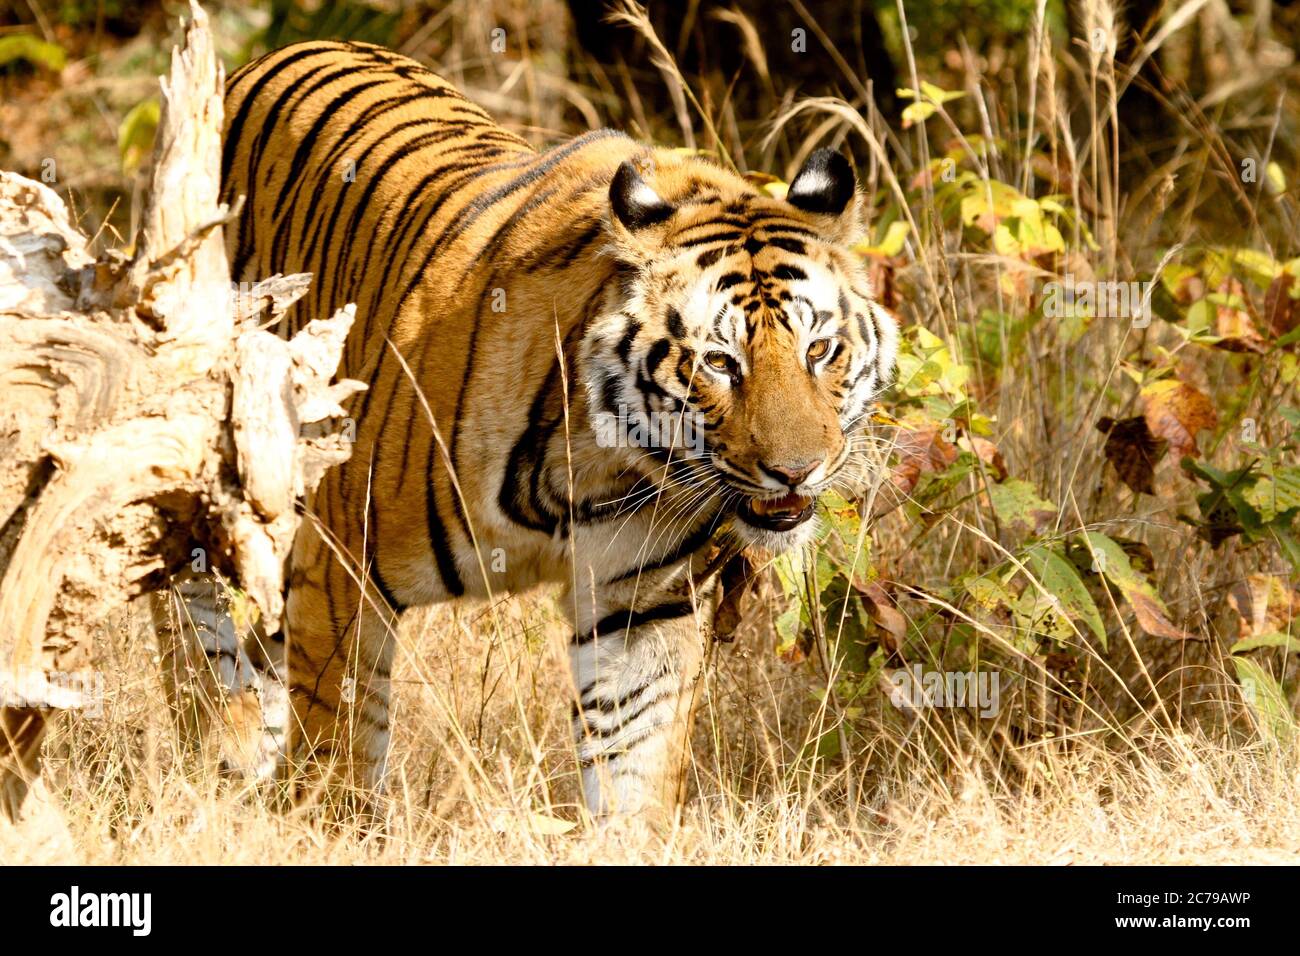 Bengal Tiger, Bandhavgarh National Park Stock Photo